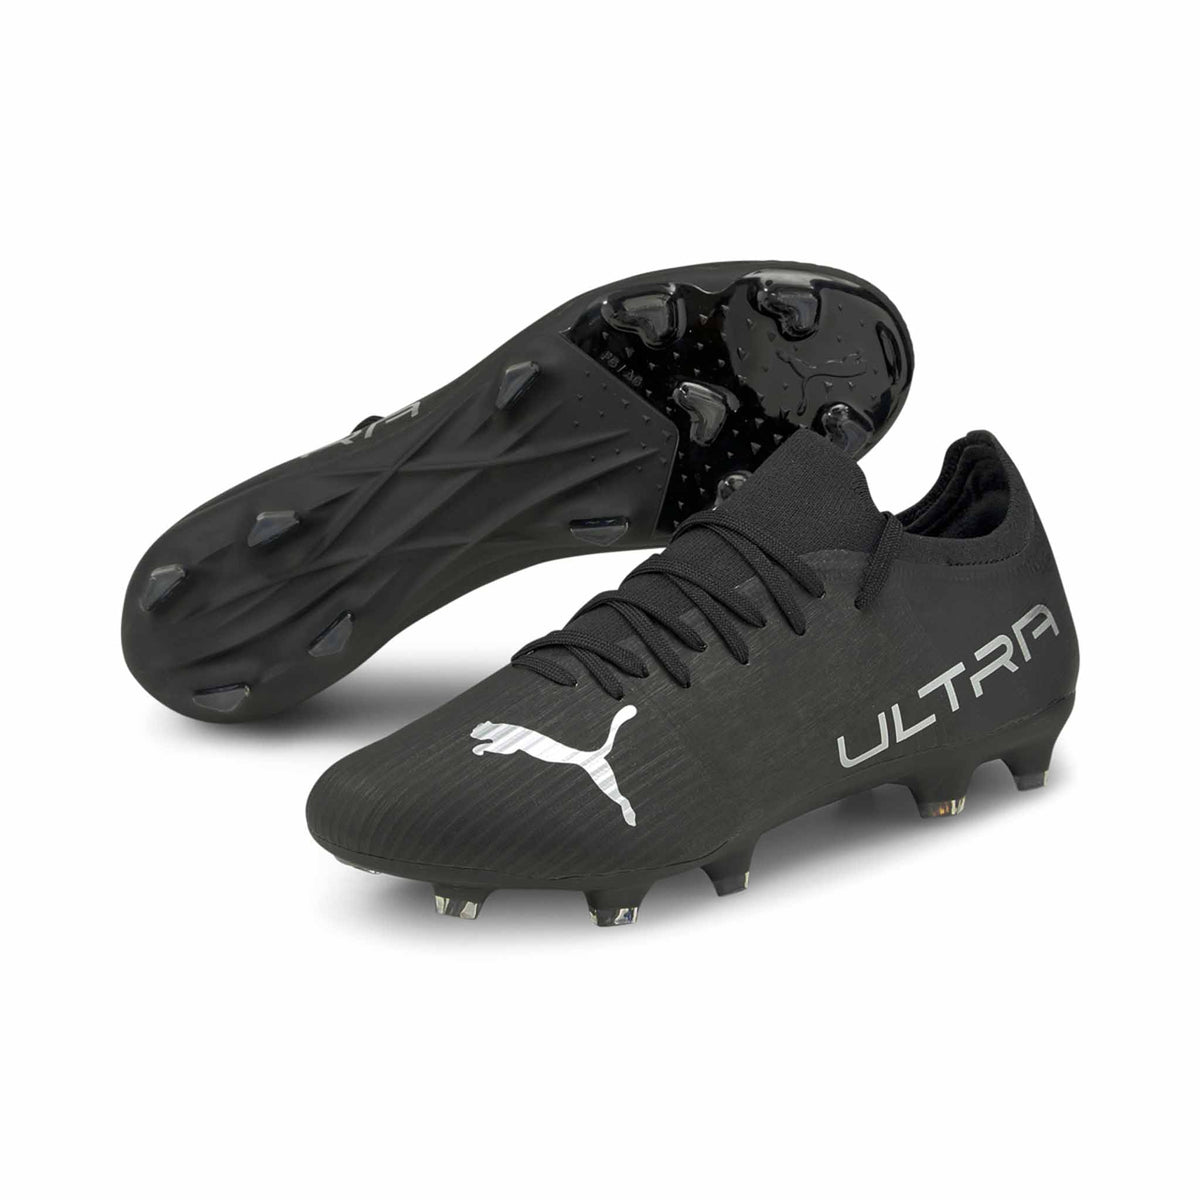 Puma Ultra 3.3 FG/AG chaussures de soccer pour adulte - Puma Black / Silver Asphalt - paire